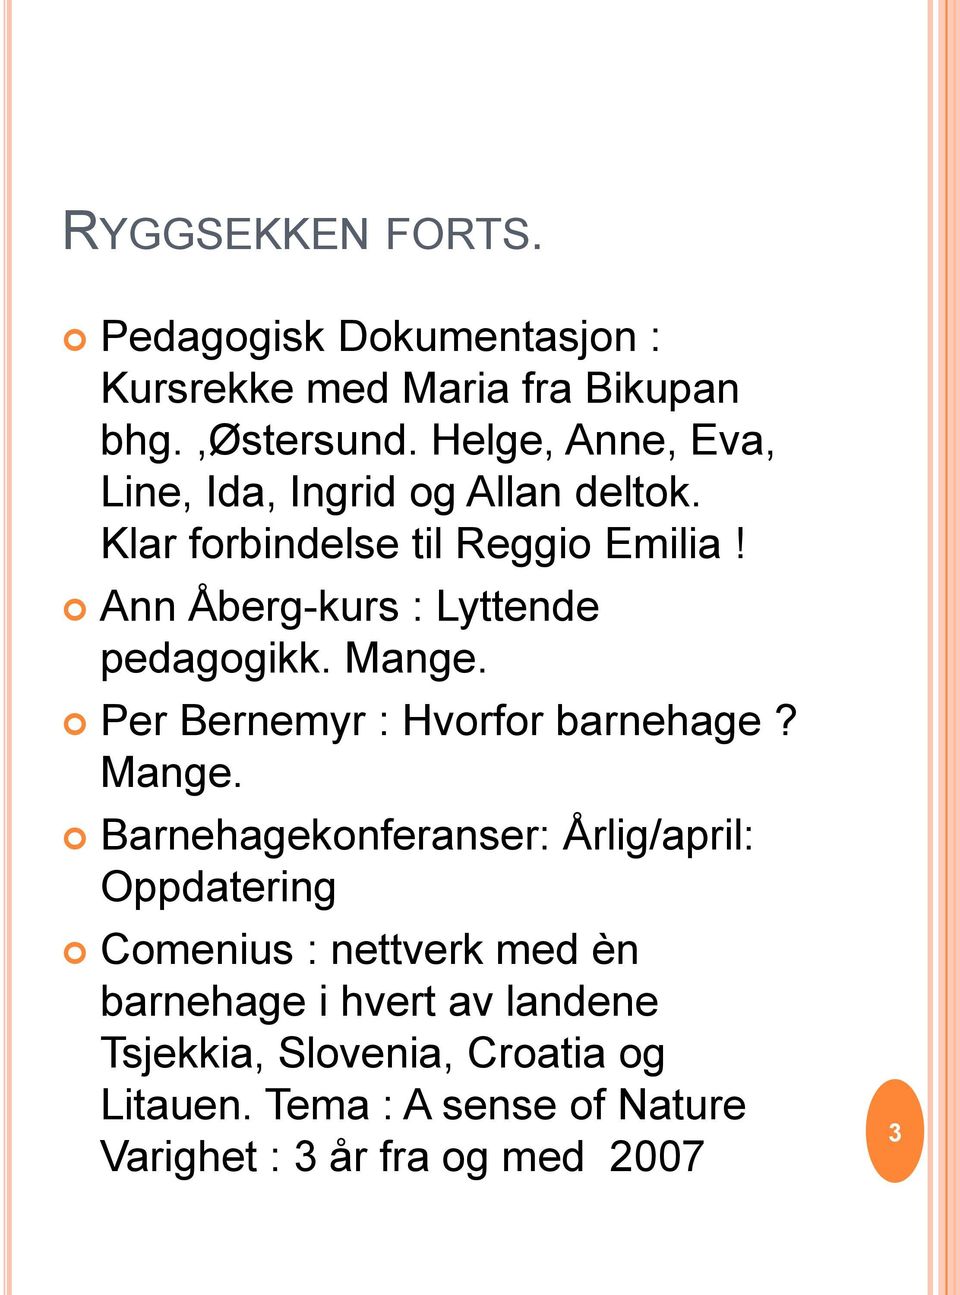 Ann Åberg-kurs : Lyttende pedagogikk. Mange.